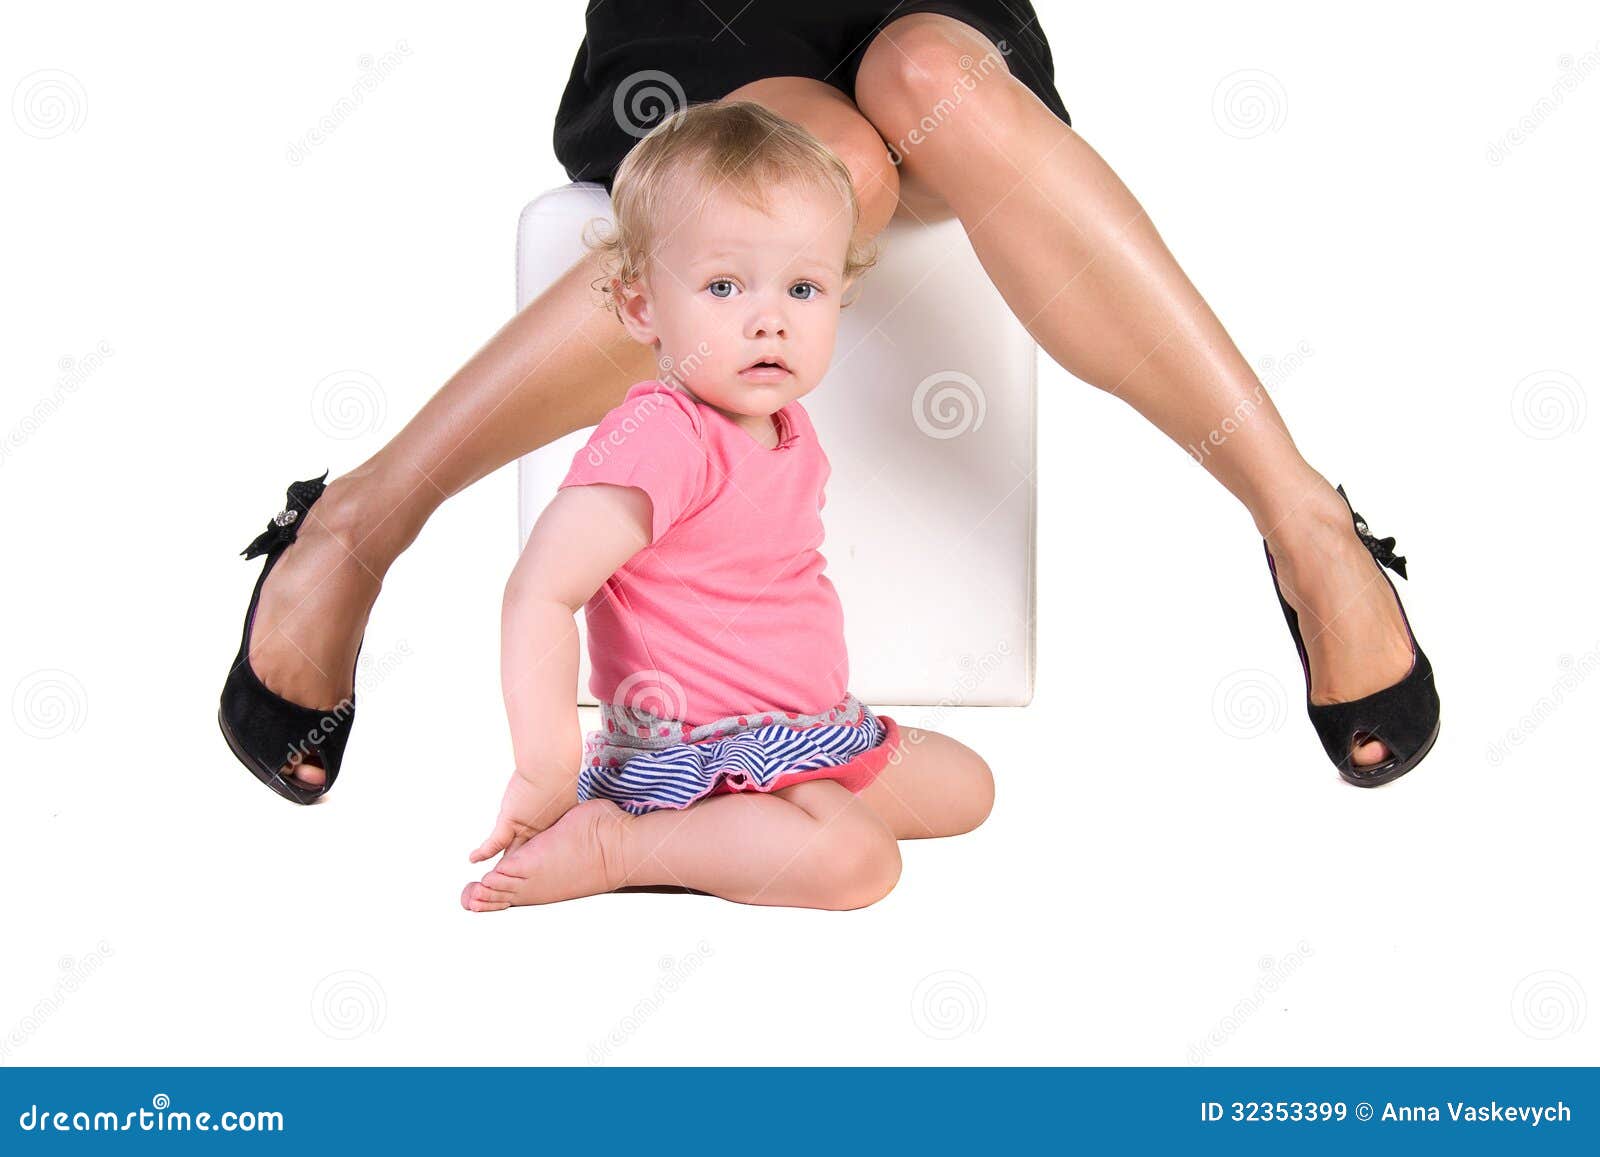 Ребенок сидит на ножках. Ребенок сидит на ногах. Дети под ногами женщин. Ребёнок под женскими ногами. Позы ног детей.